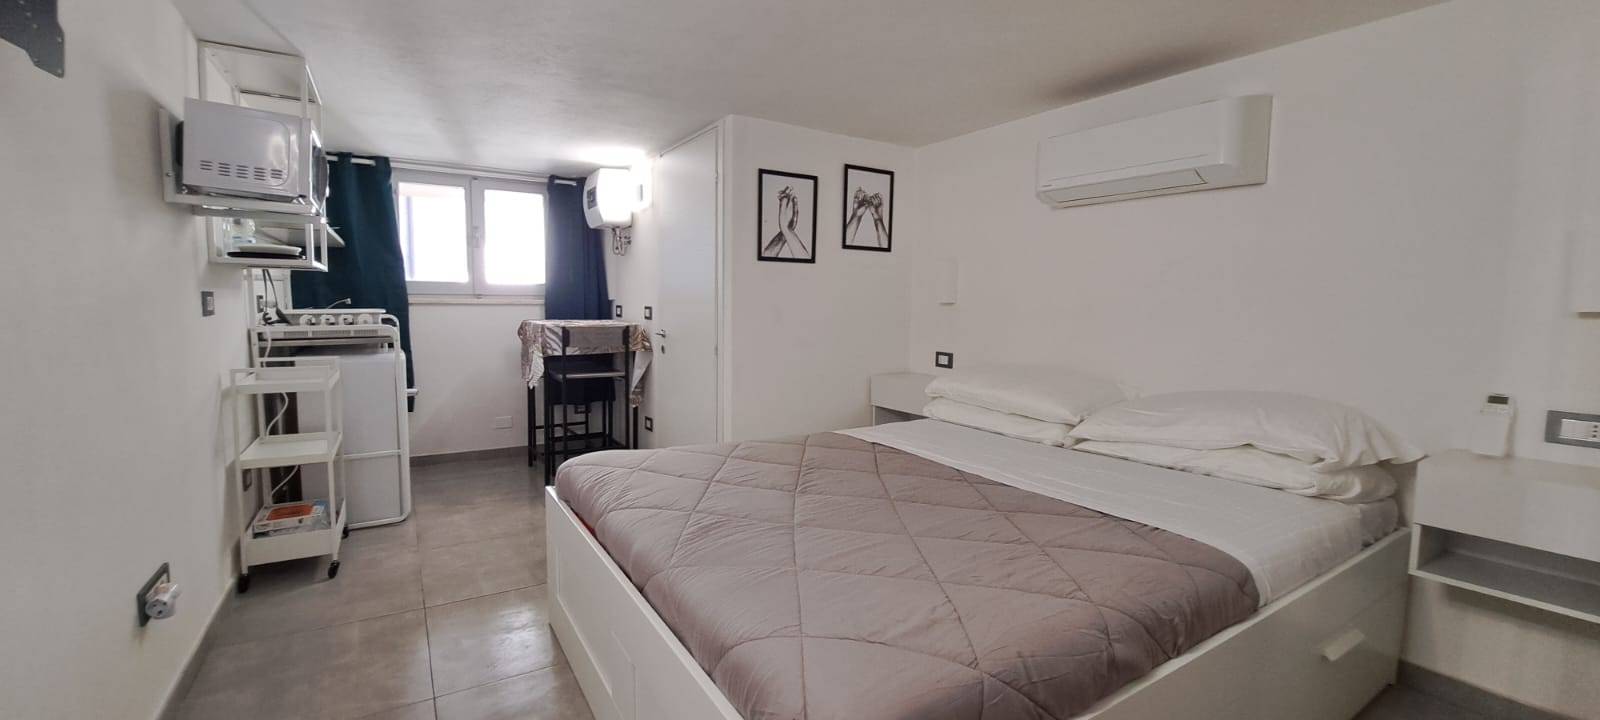 Appartamento in vendita a Rimini, 1 locali, zona Località: MarinaCentro, prezzo € 102.000 | PortaleAgenzieImmobiliari.it